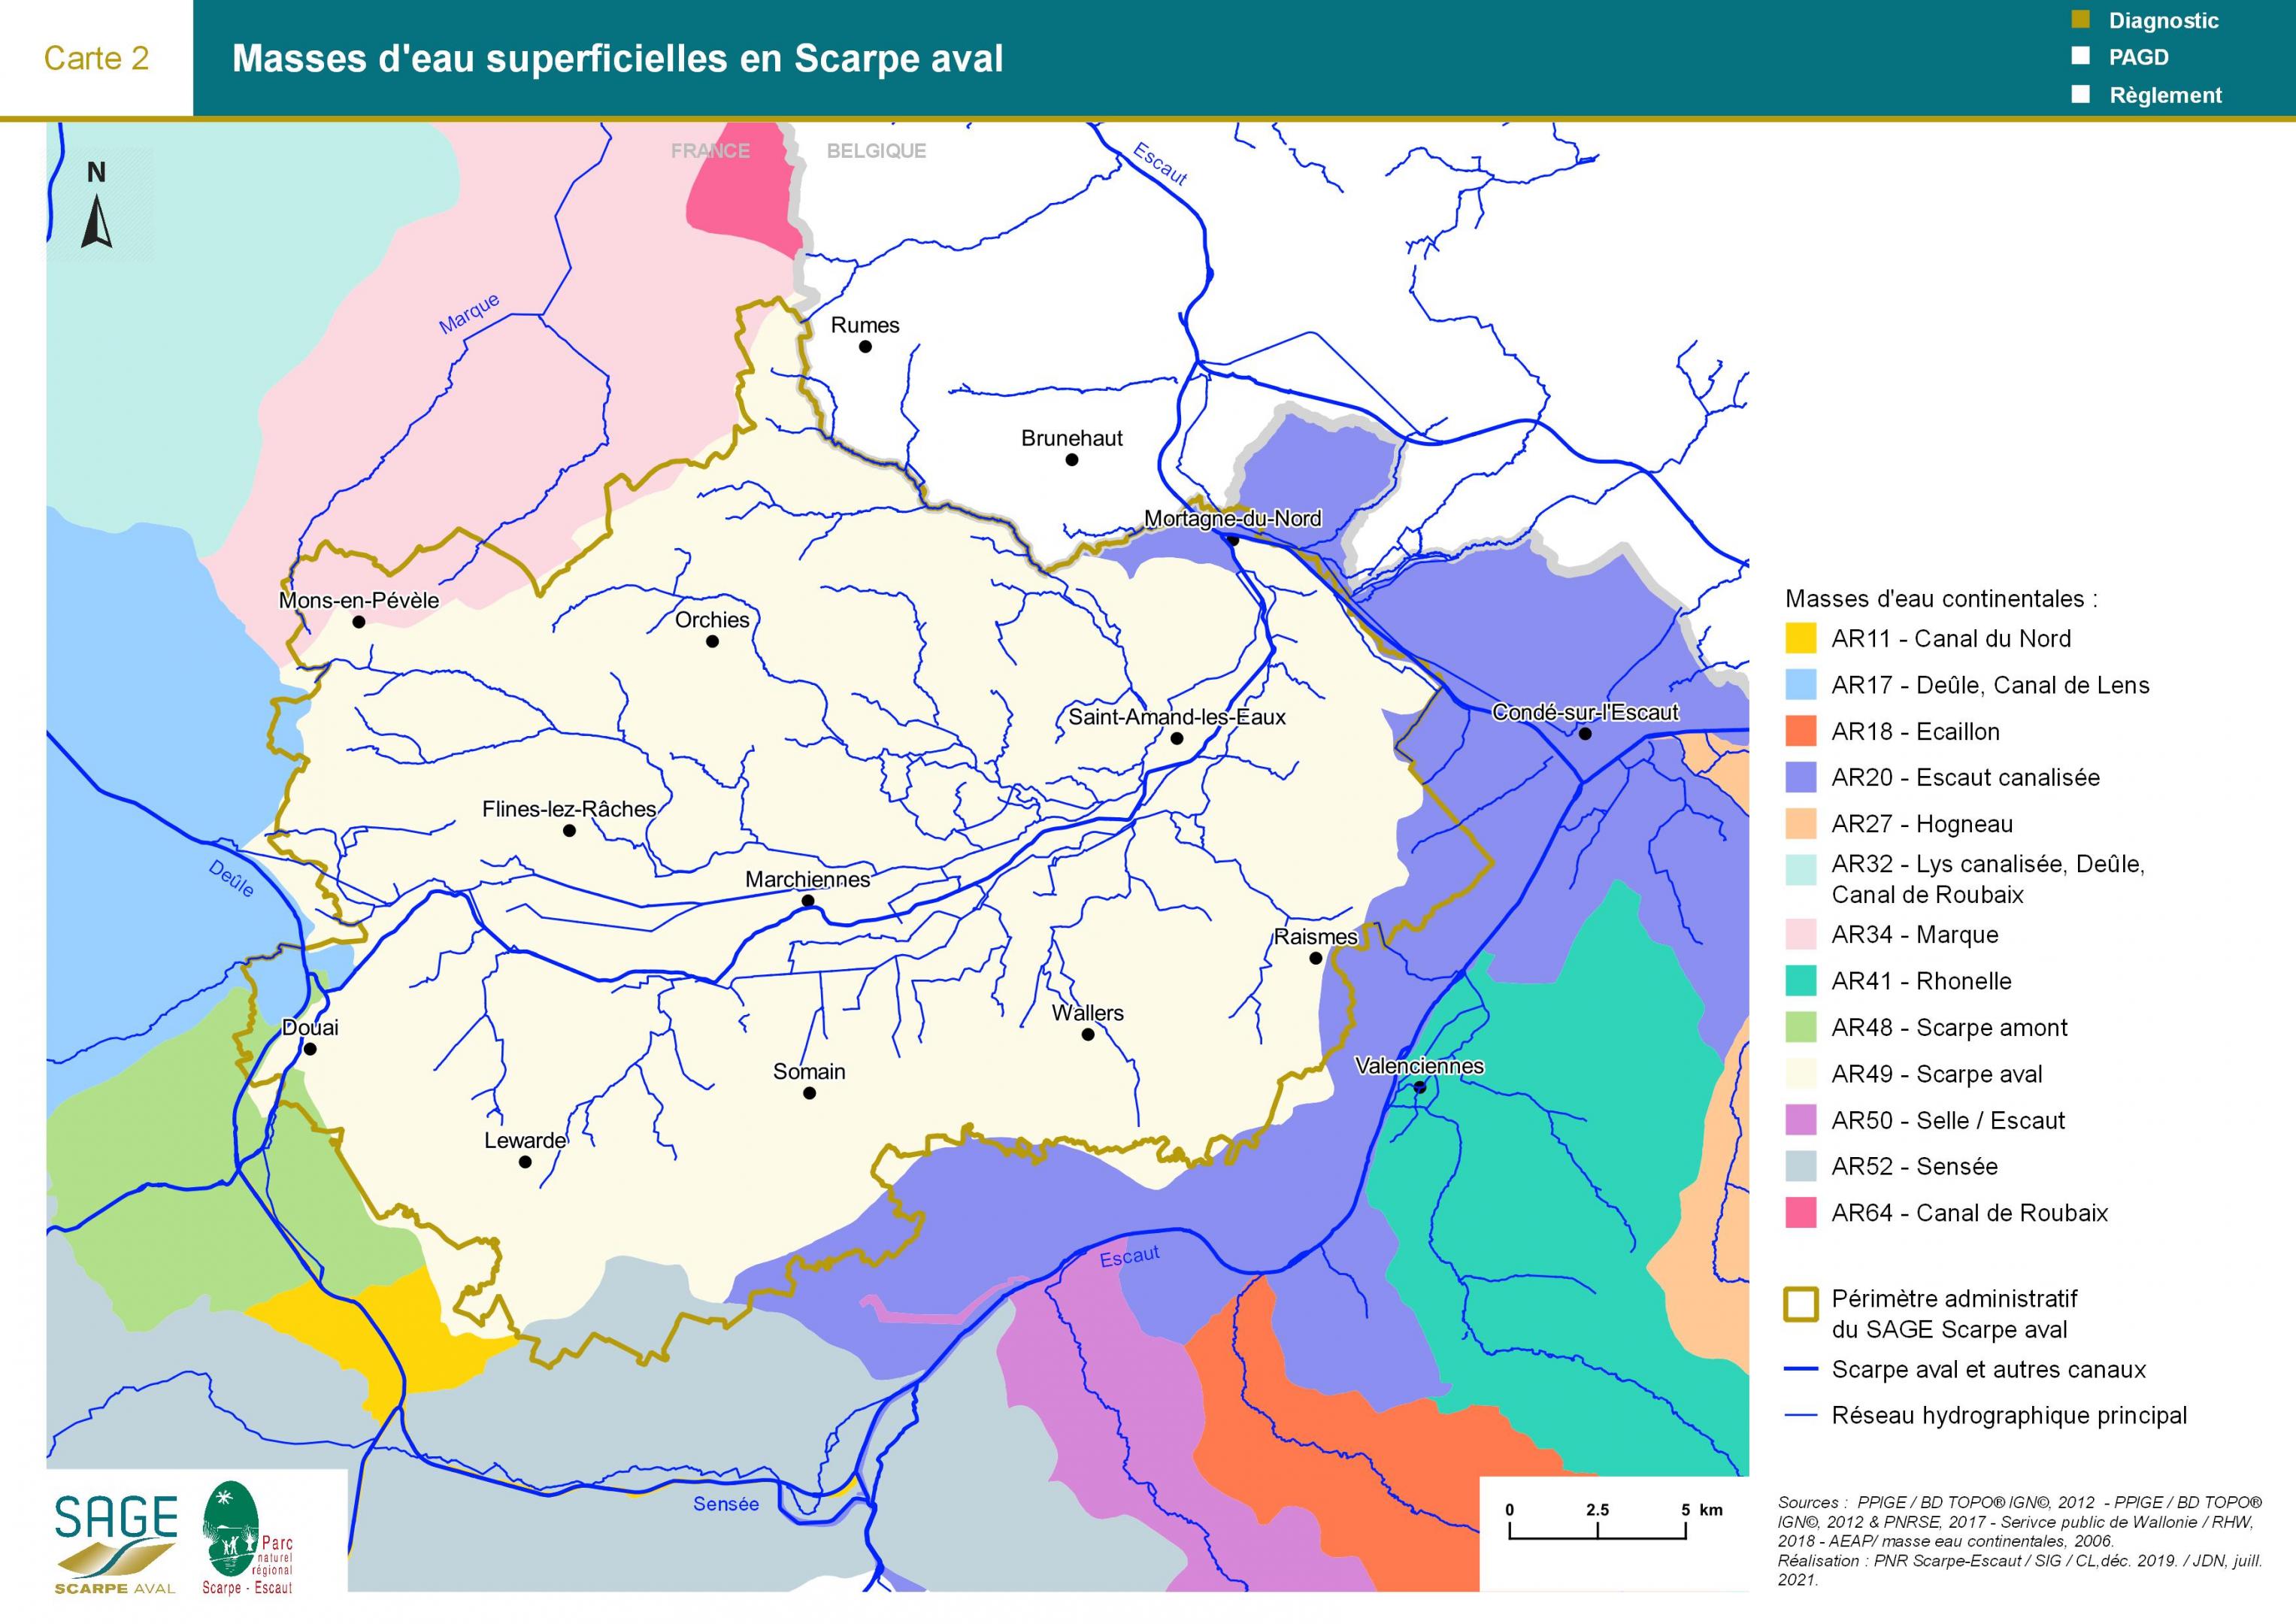 Etat des lieux - Carte 2 : Masses d'eau superficielles en Scarpe aval